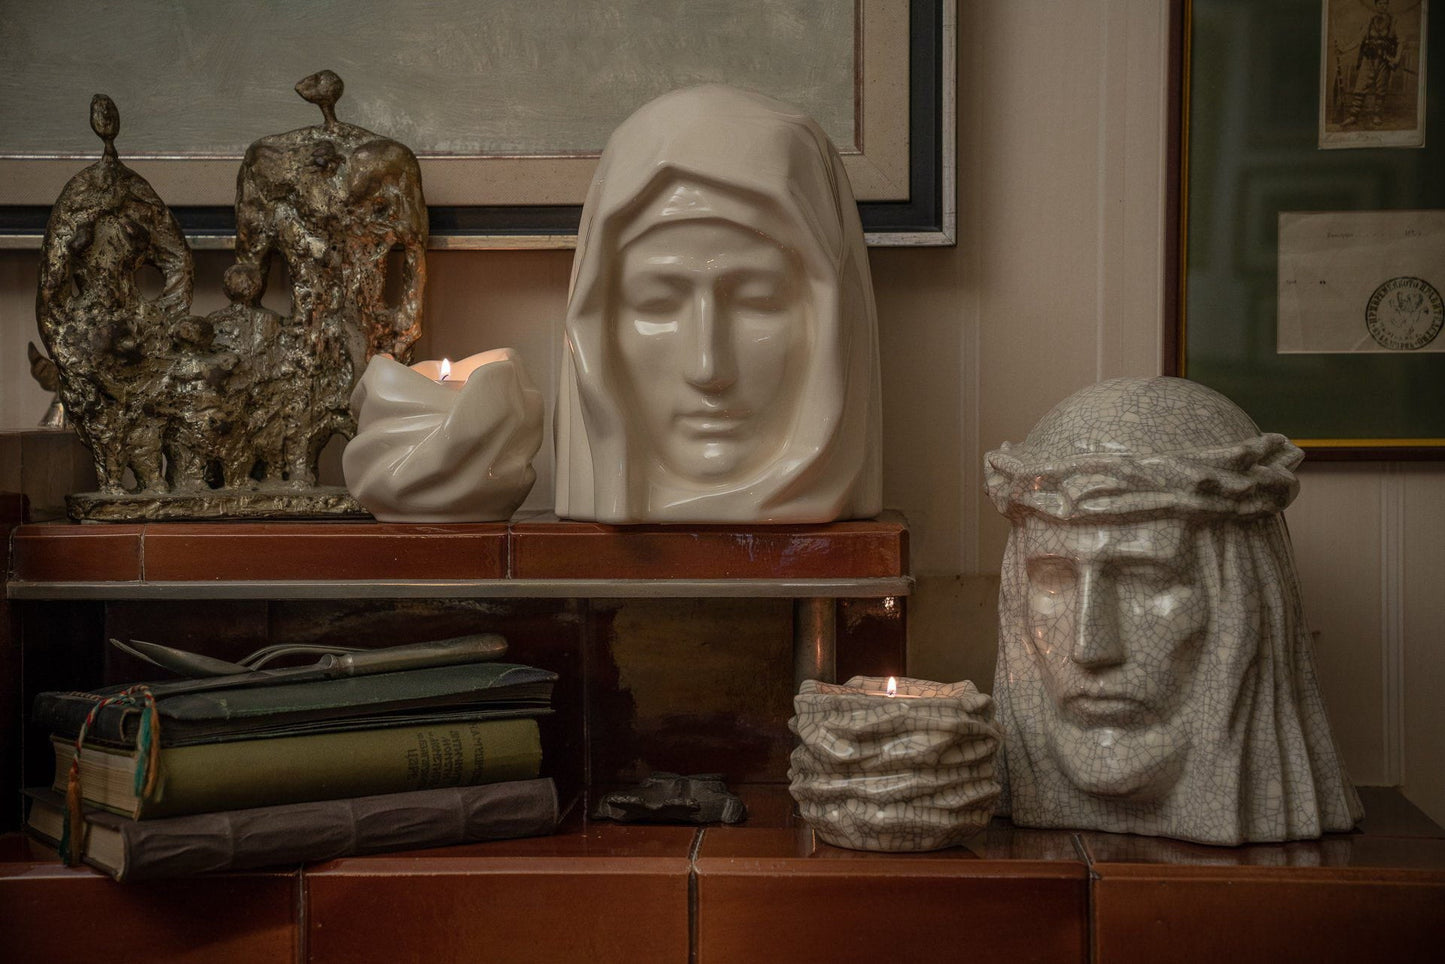 
                  
                    Set of Cremation Urns for Ashes - The Holy Mother ( Large urn + Keepsake)-Pulvis Art Urns
                  
                